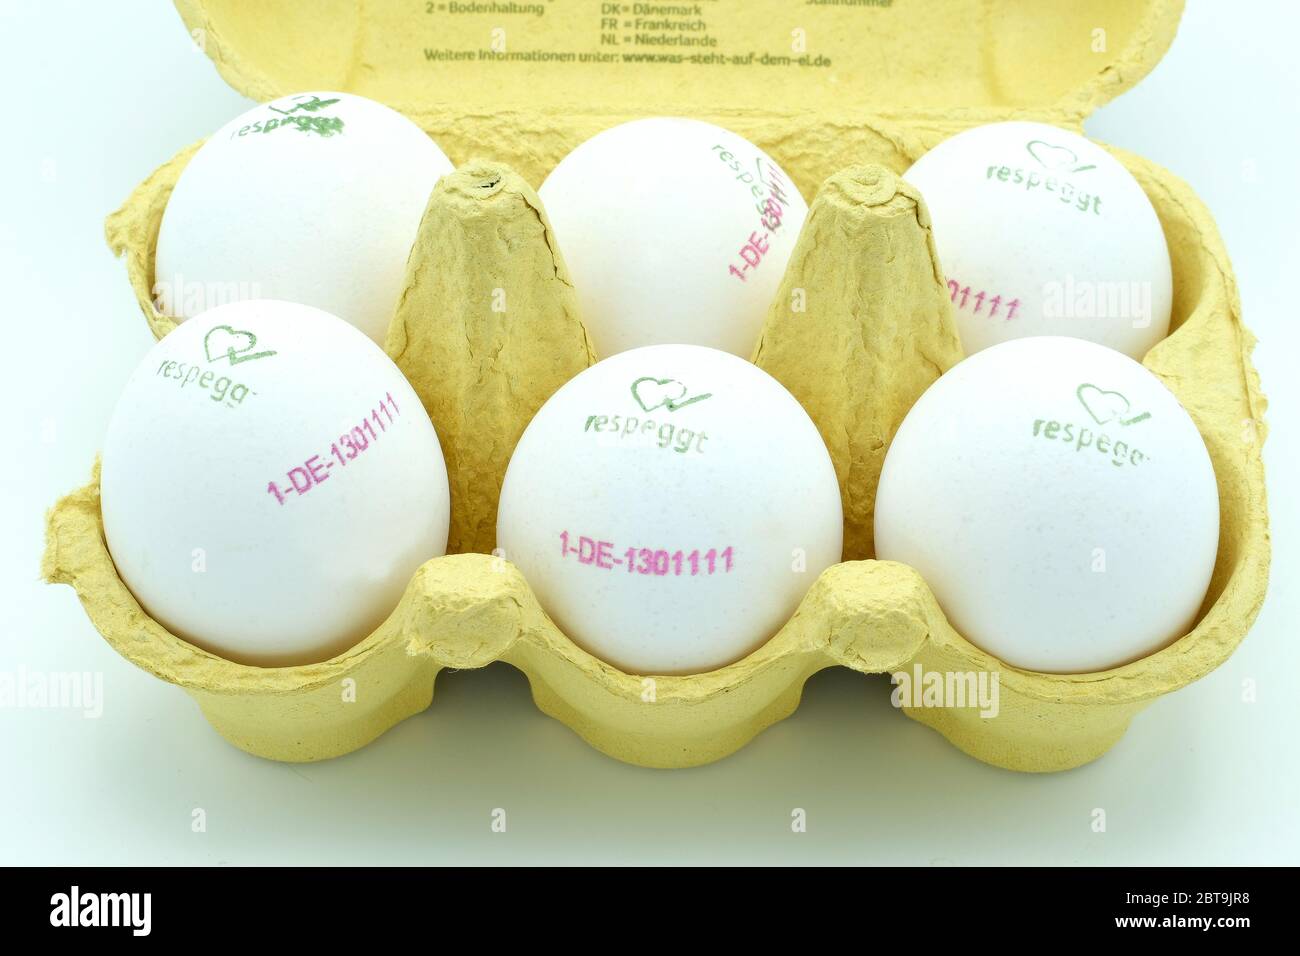 Nahaufnahme einer Eierbox voller ein halbes Dutzend weißer Freilandeier markiert respeggt Stockfoto